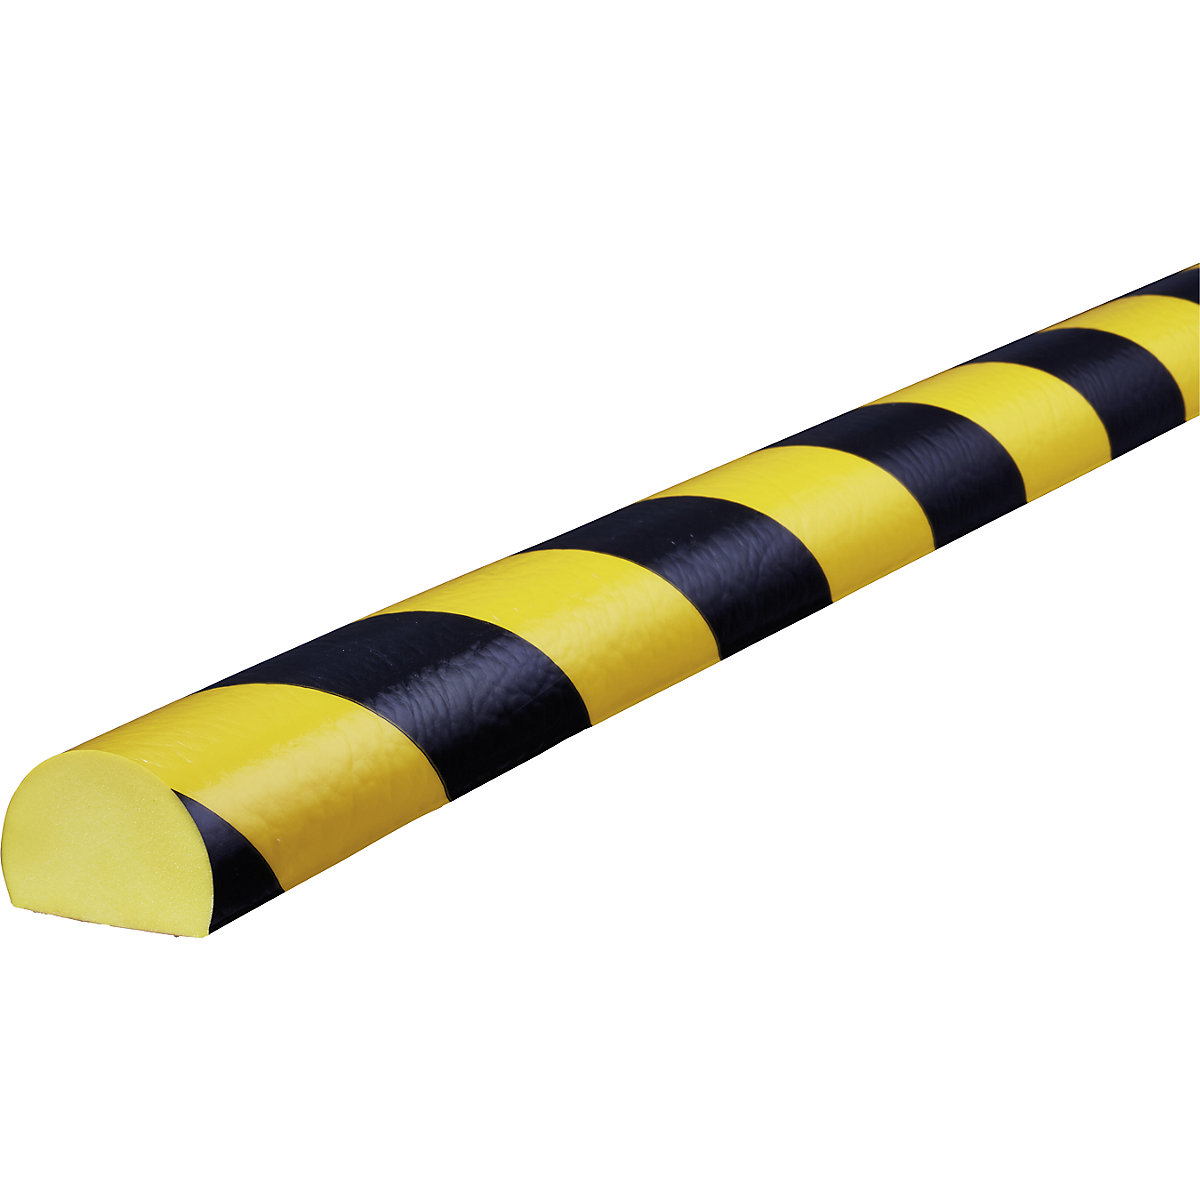 Protection des surfaces Knuffi® – SHG, type C, 1 rouleau de 5 m, noir / jaune